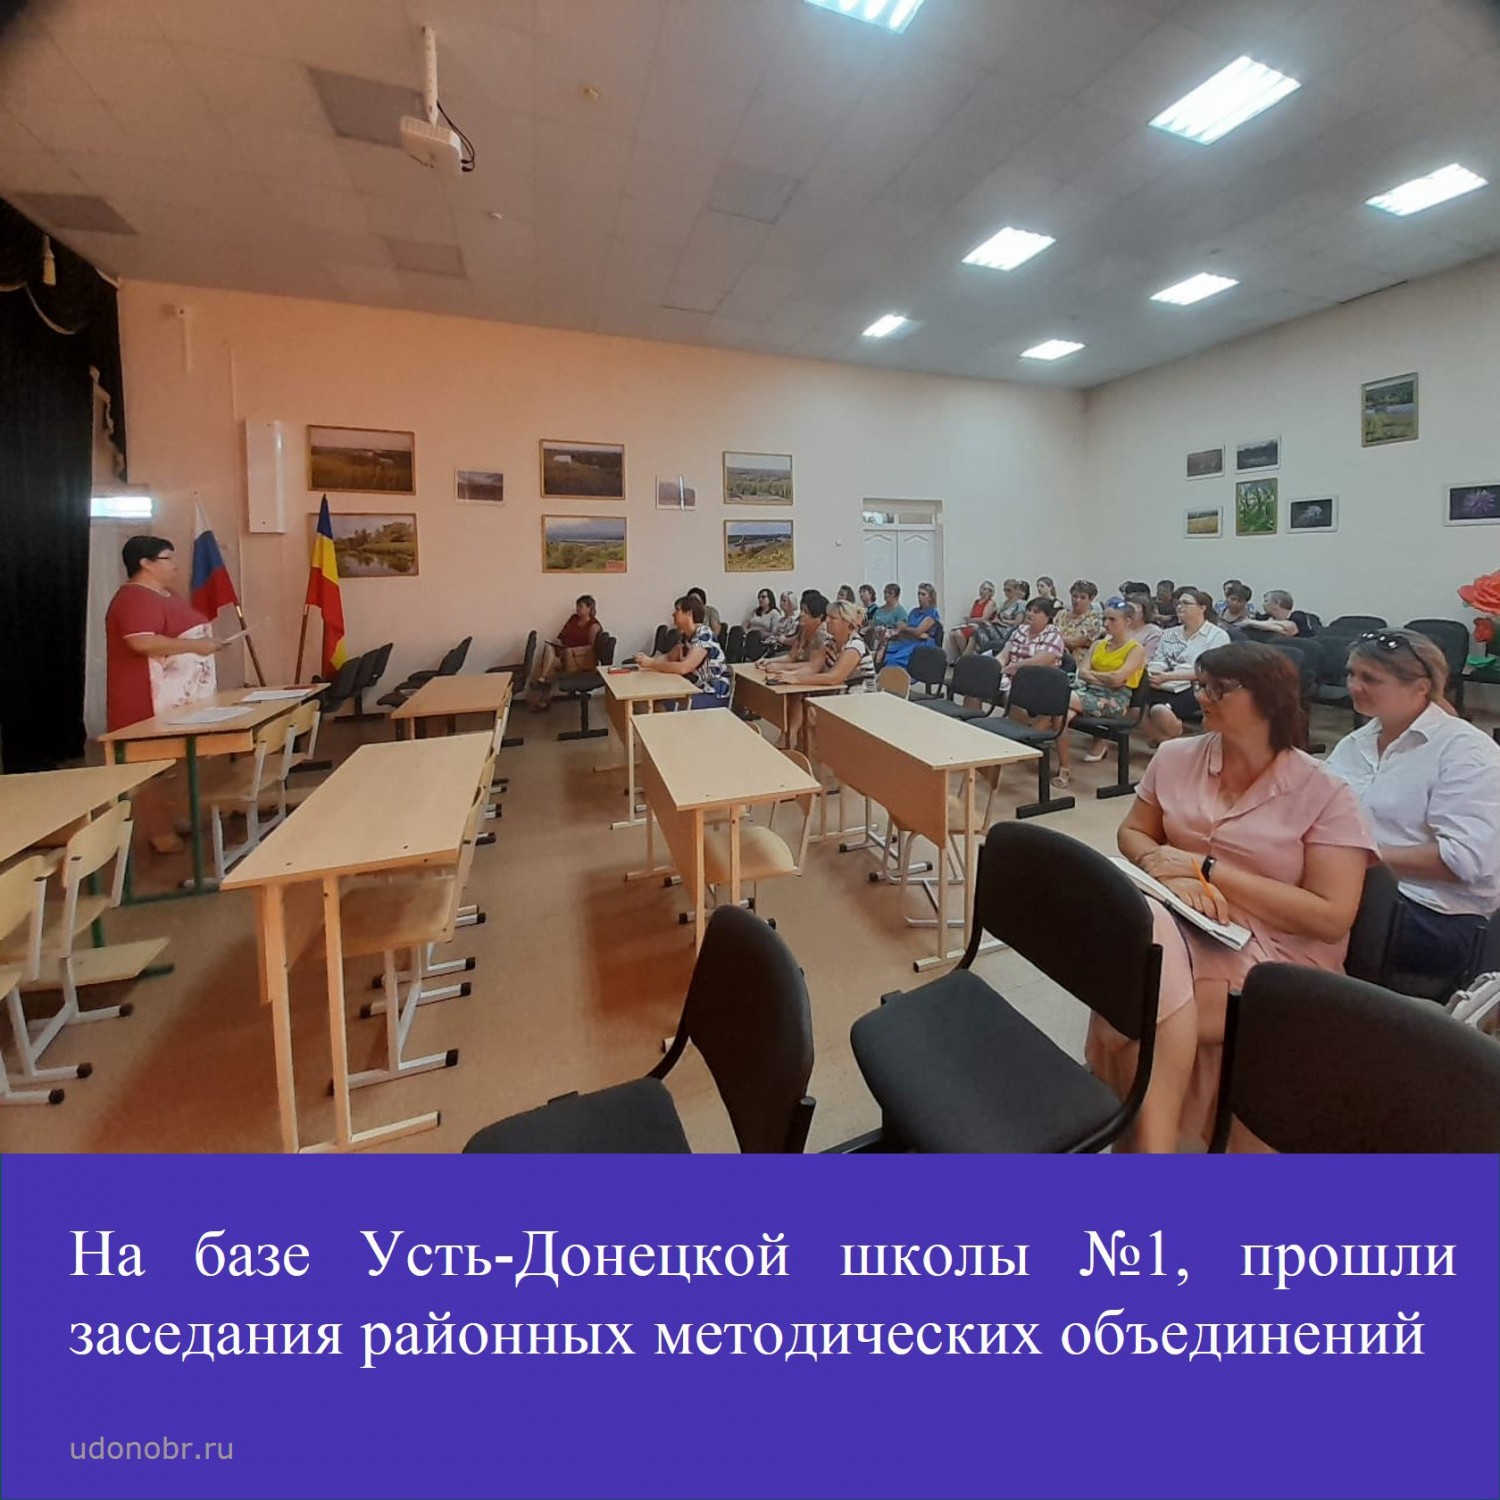 На базе Усть-Донецкой школы №1, прошли заседания районных методических объединений.